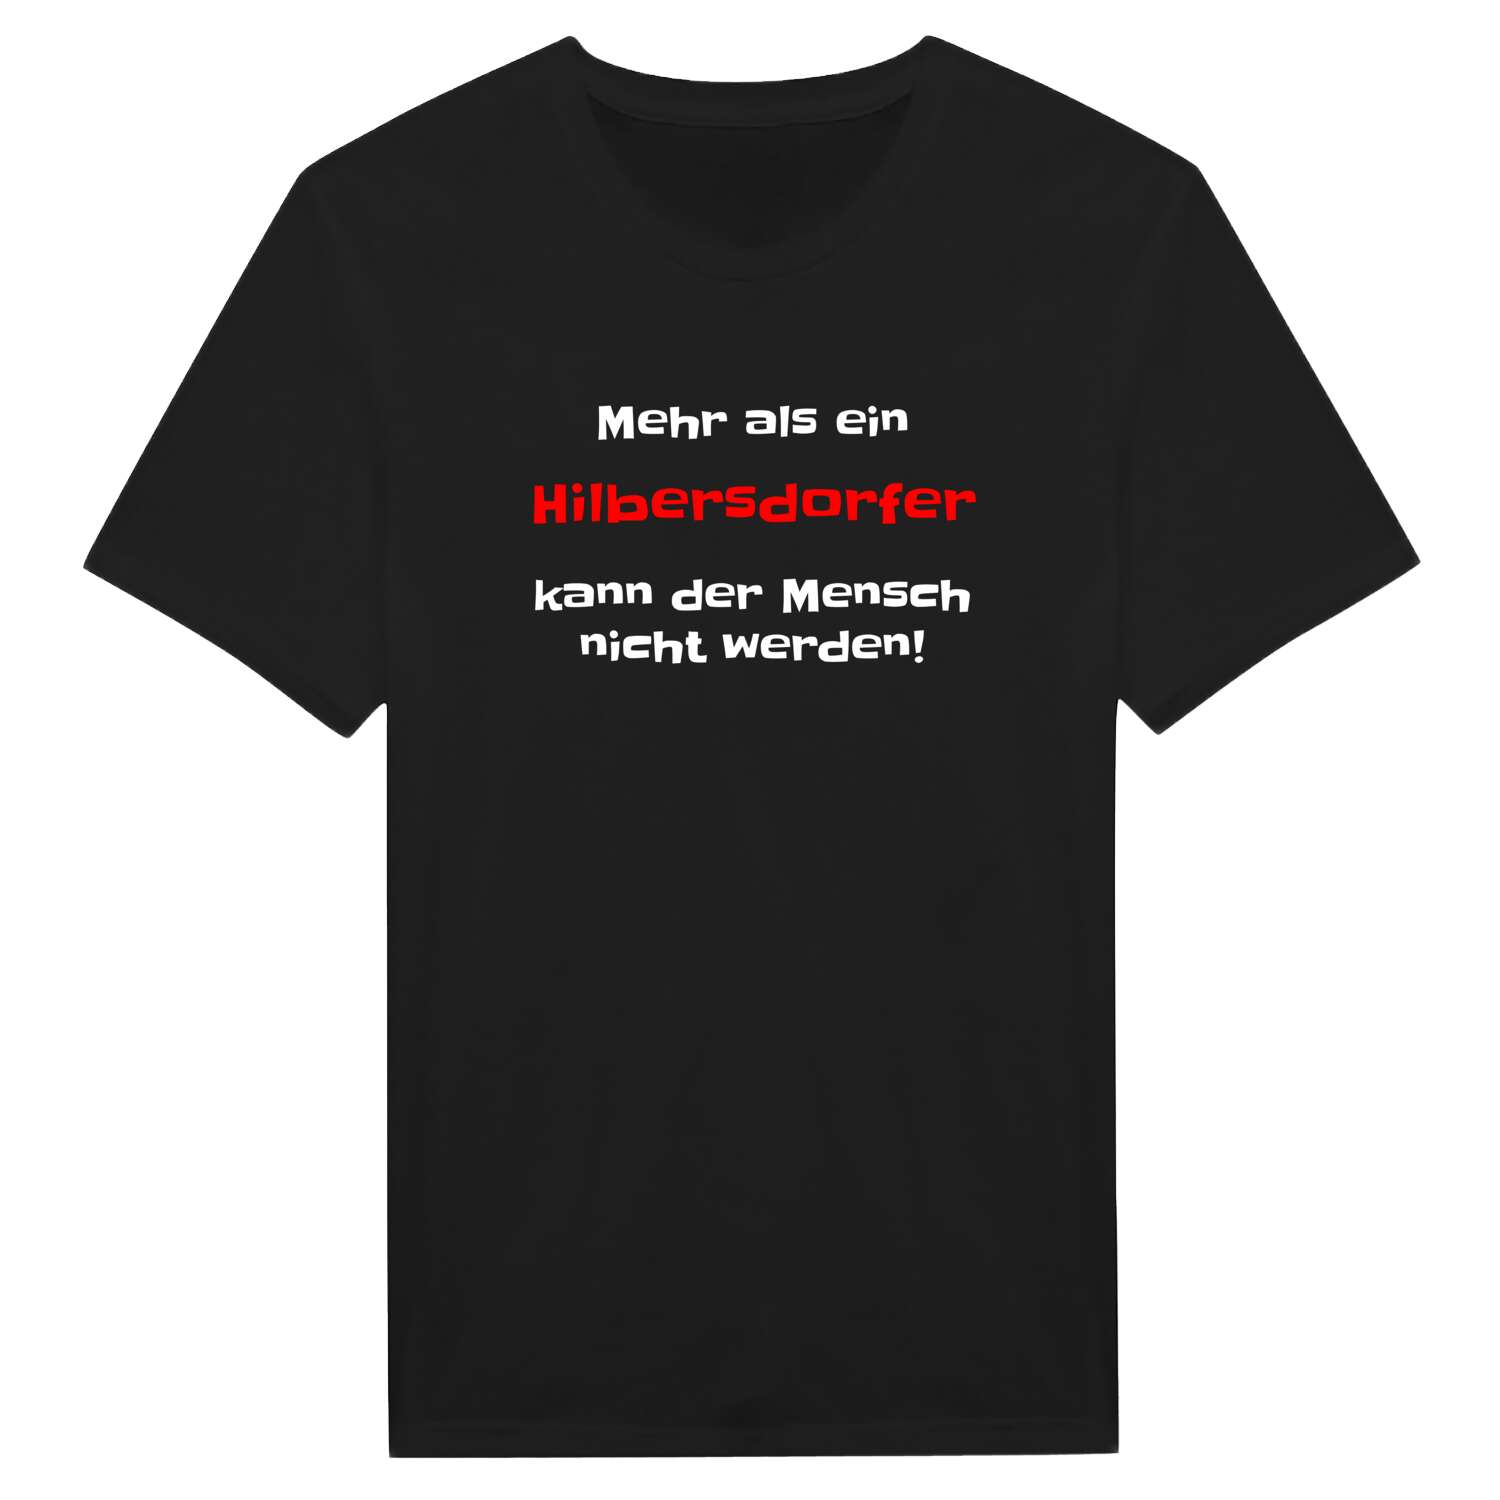 Hilbersdorf T-Shirt »Mehr als ein«